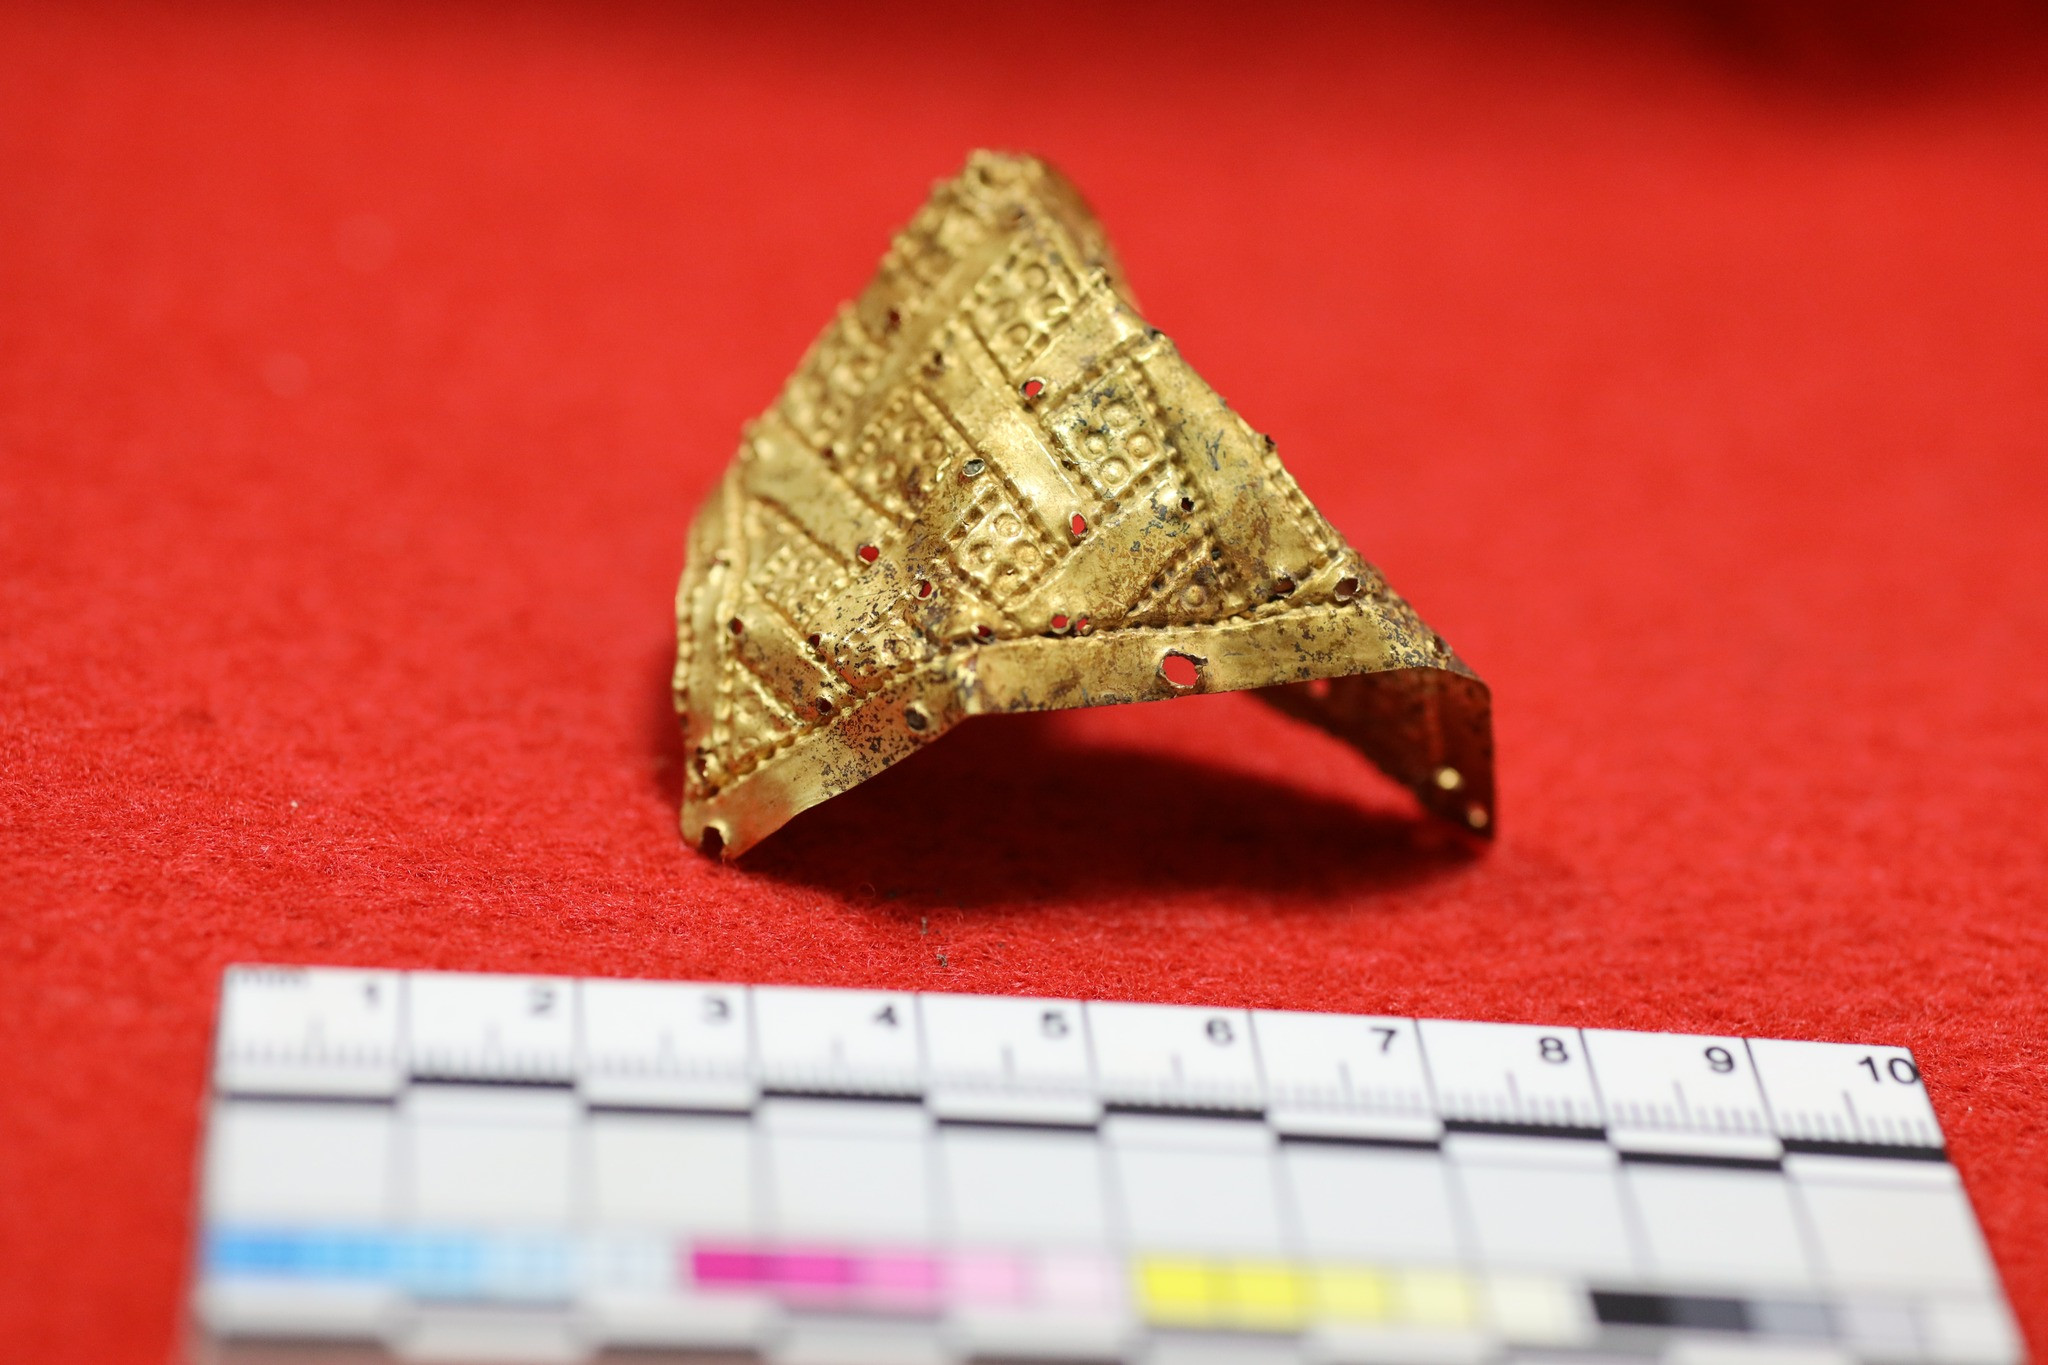 Археологи знайшли унікальний скарб, пов’язаний з буремними історичними подіями часів Гетьманщини - зображення